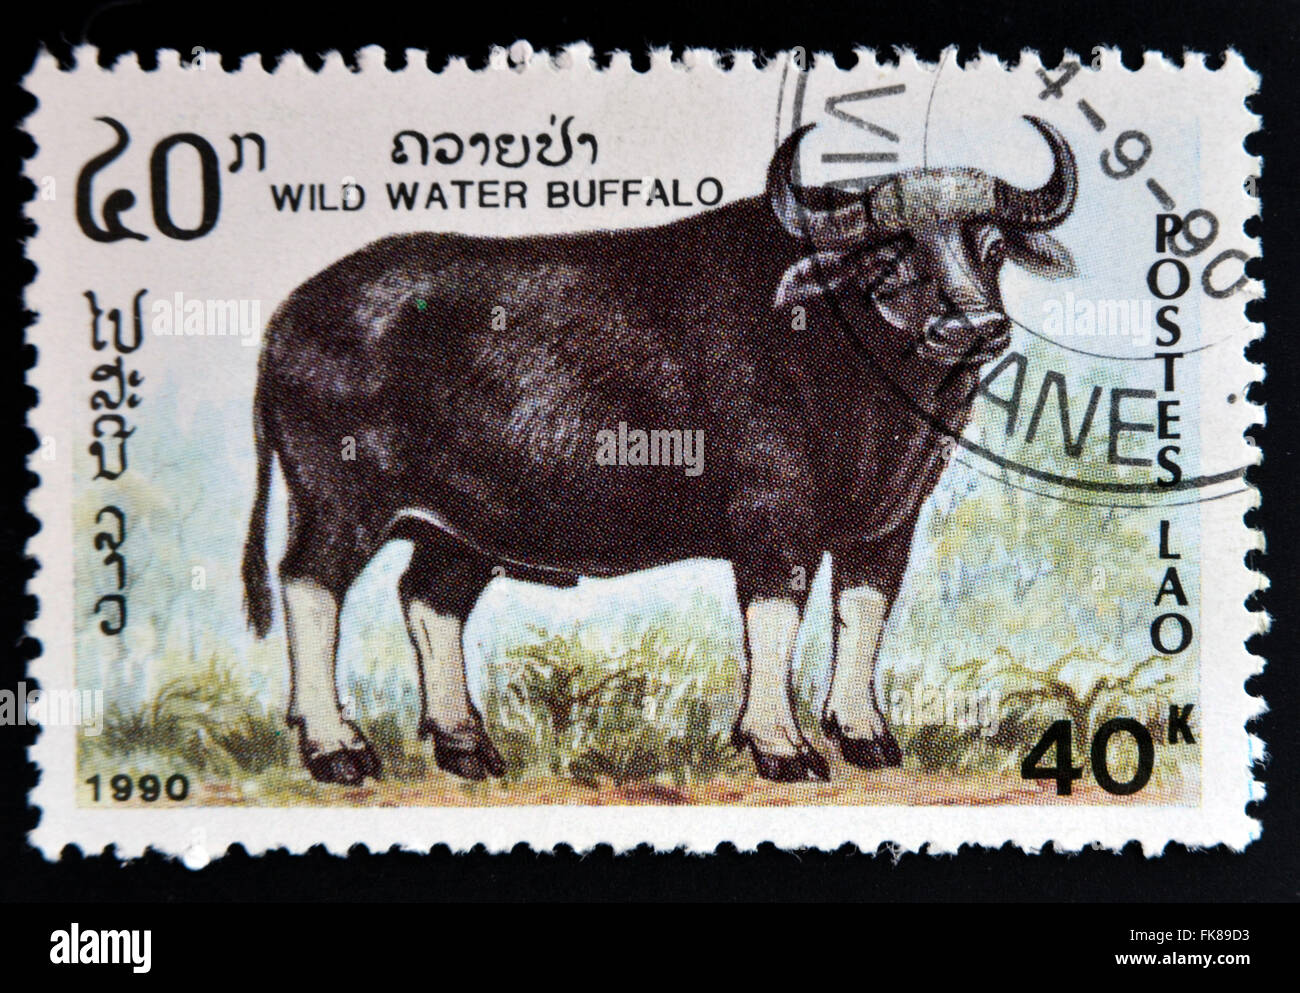 LAOS - CIRCA 1990: A stamp printed in Laos shows wild water buffalo, circa 1990 Stock Photo